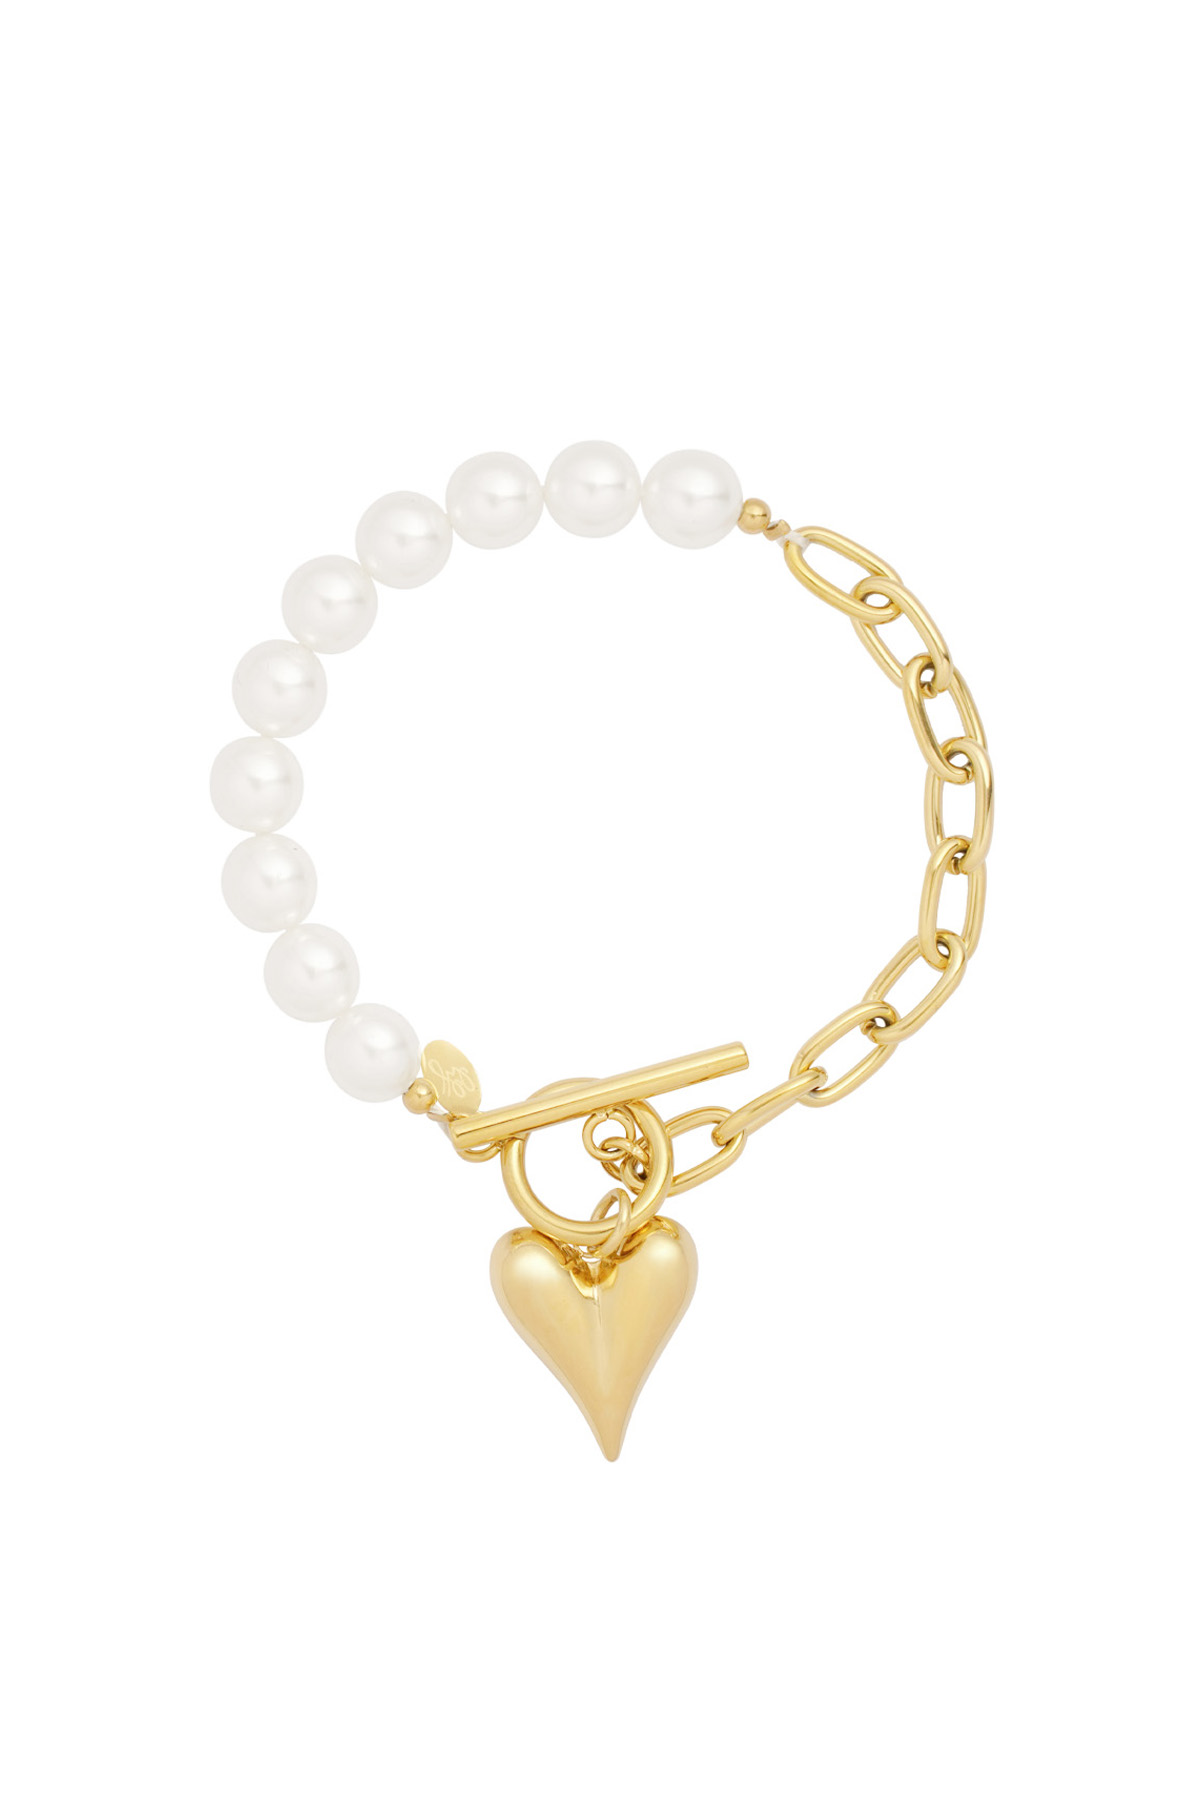 Double love bracelet - gold  h5 